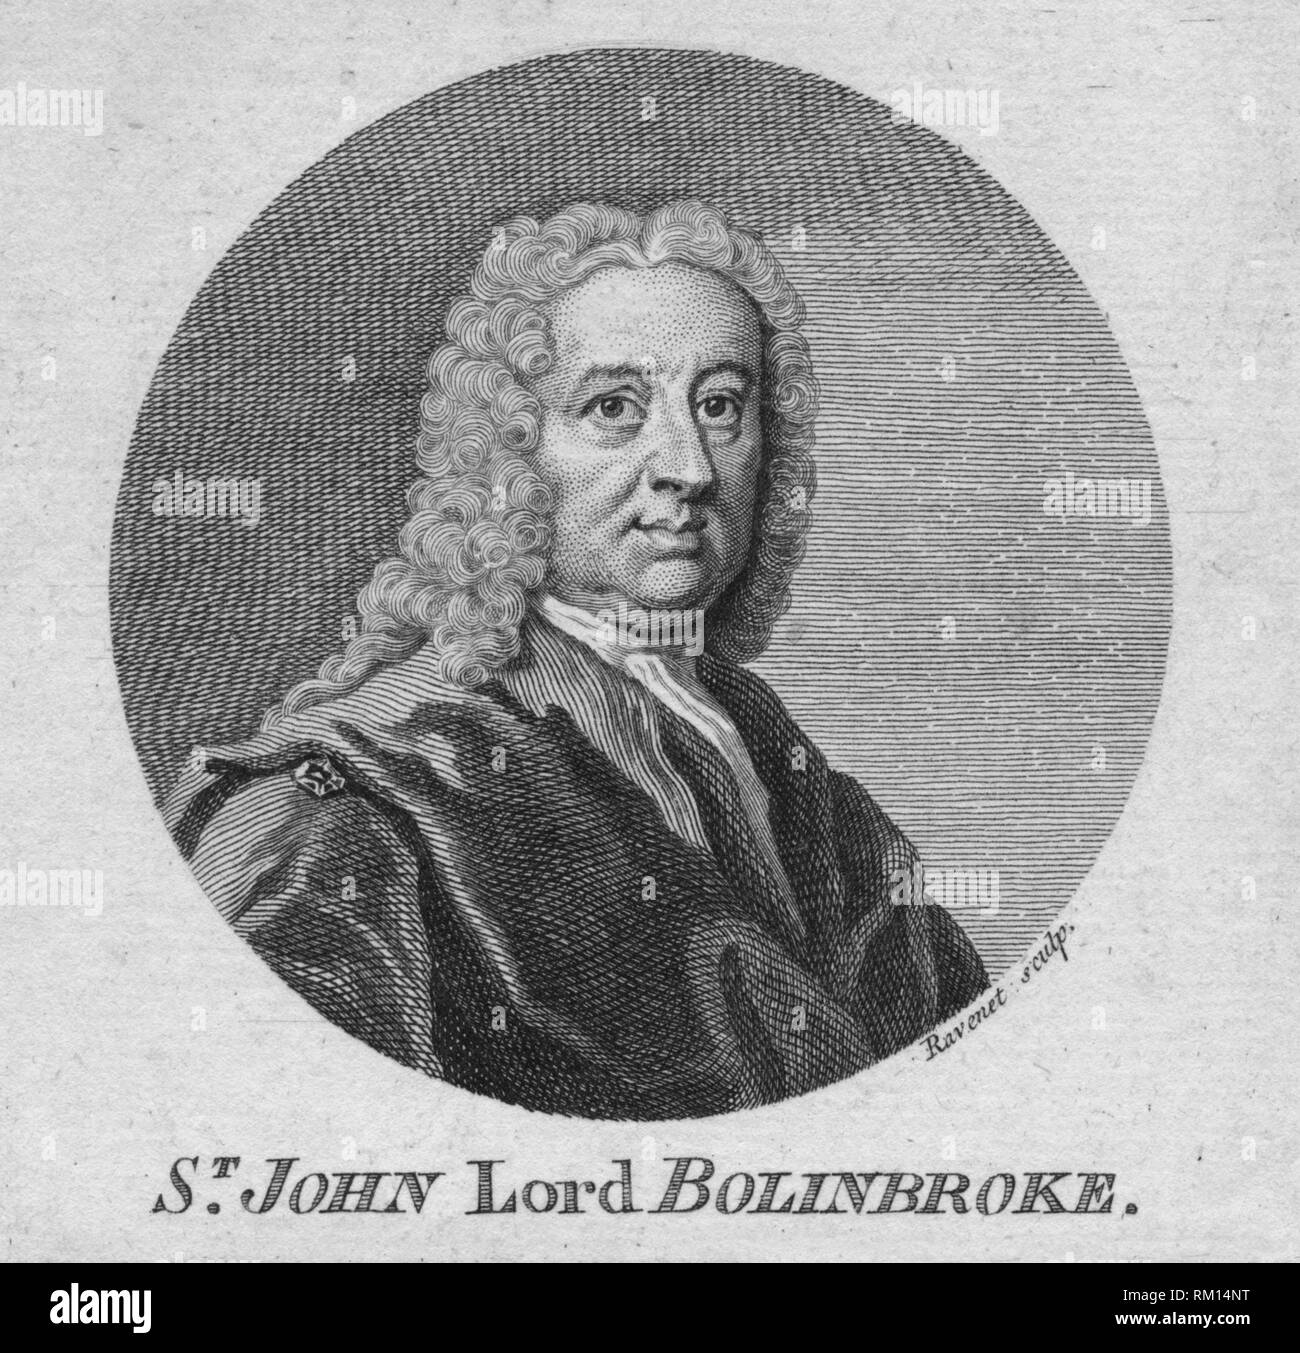 'St. John Lord Bolinbroke', c1750s.  Creator: Simon FranÃ§ois Ravenet. Stock Photo